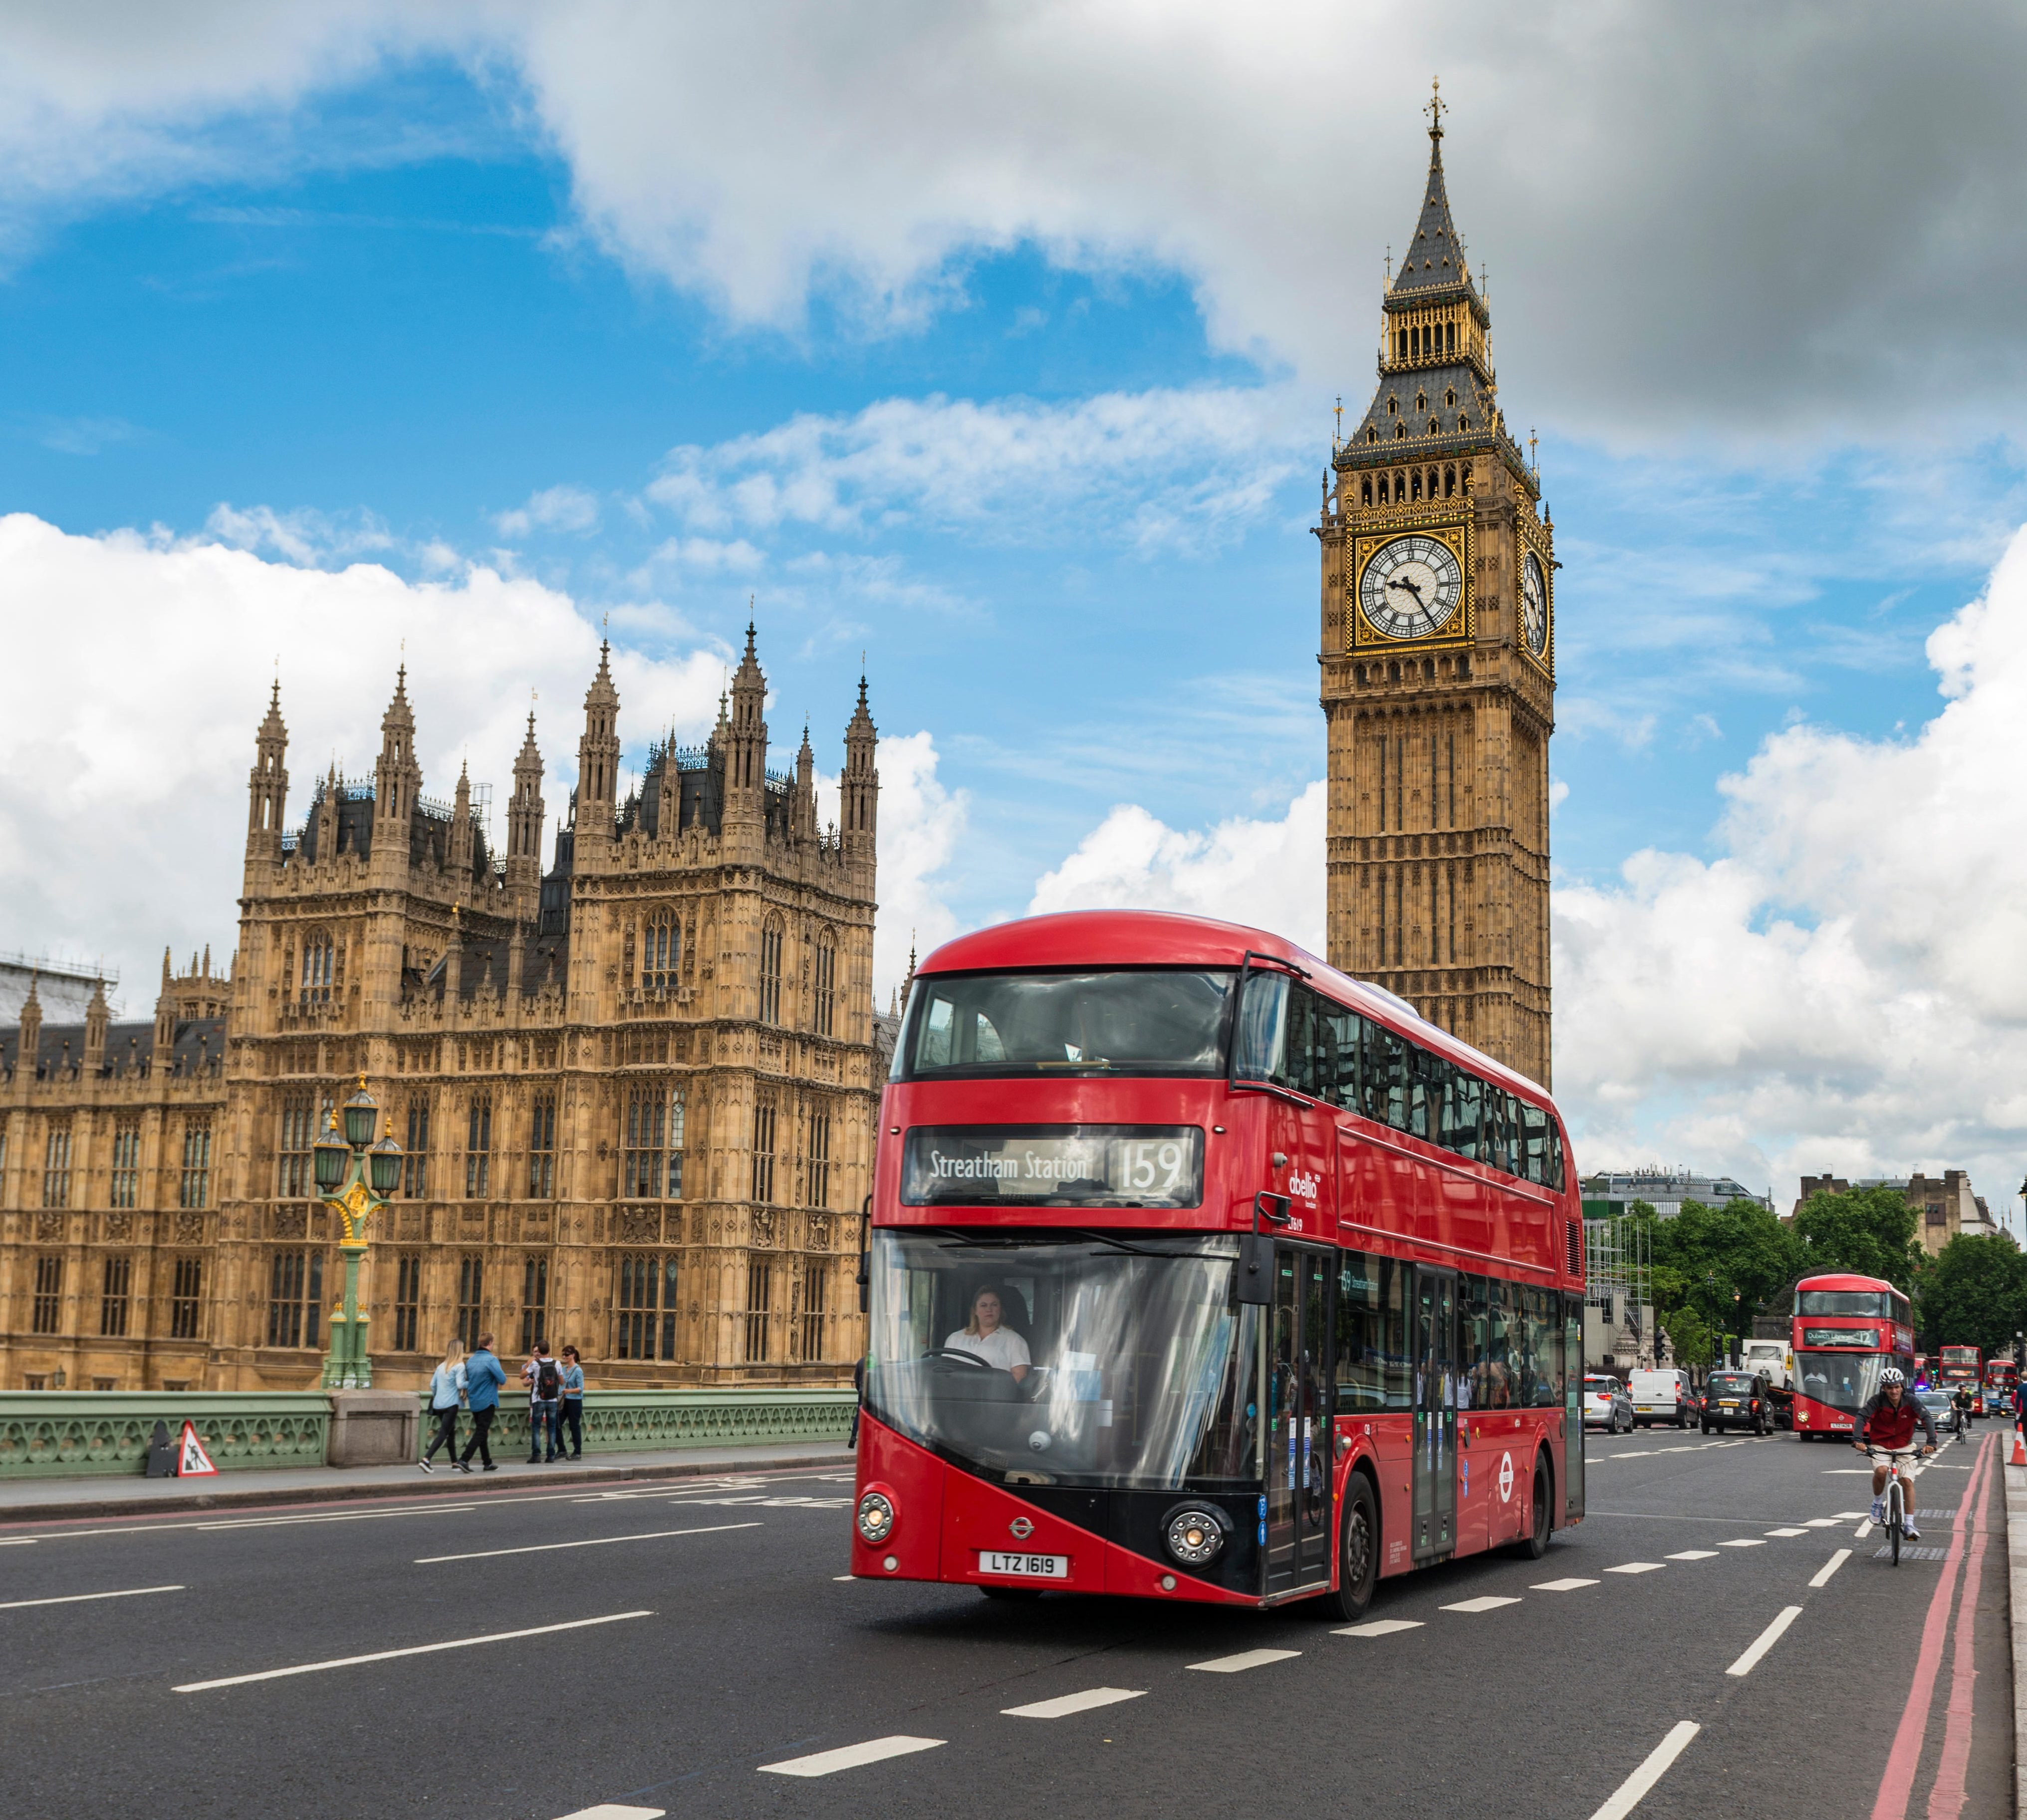 Лондон 7 3. Дабл Деккер в Лондоне. Англия Биг Бен. Дабл Деккер автобус символ Лондона. Двухэтажные автобусы в Лондоне с Биг Бен.